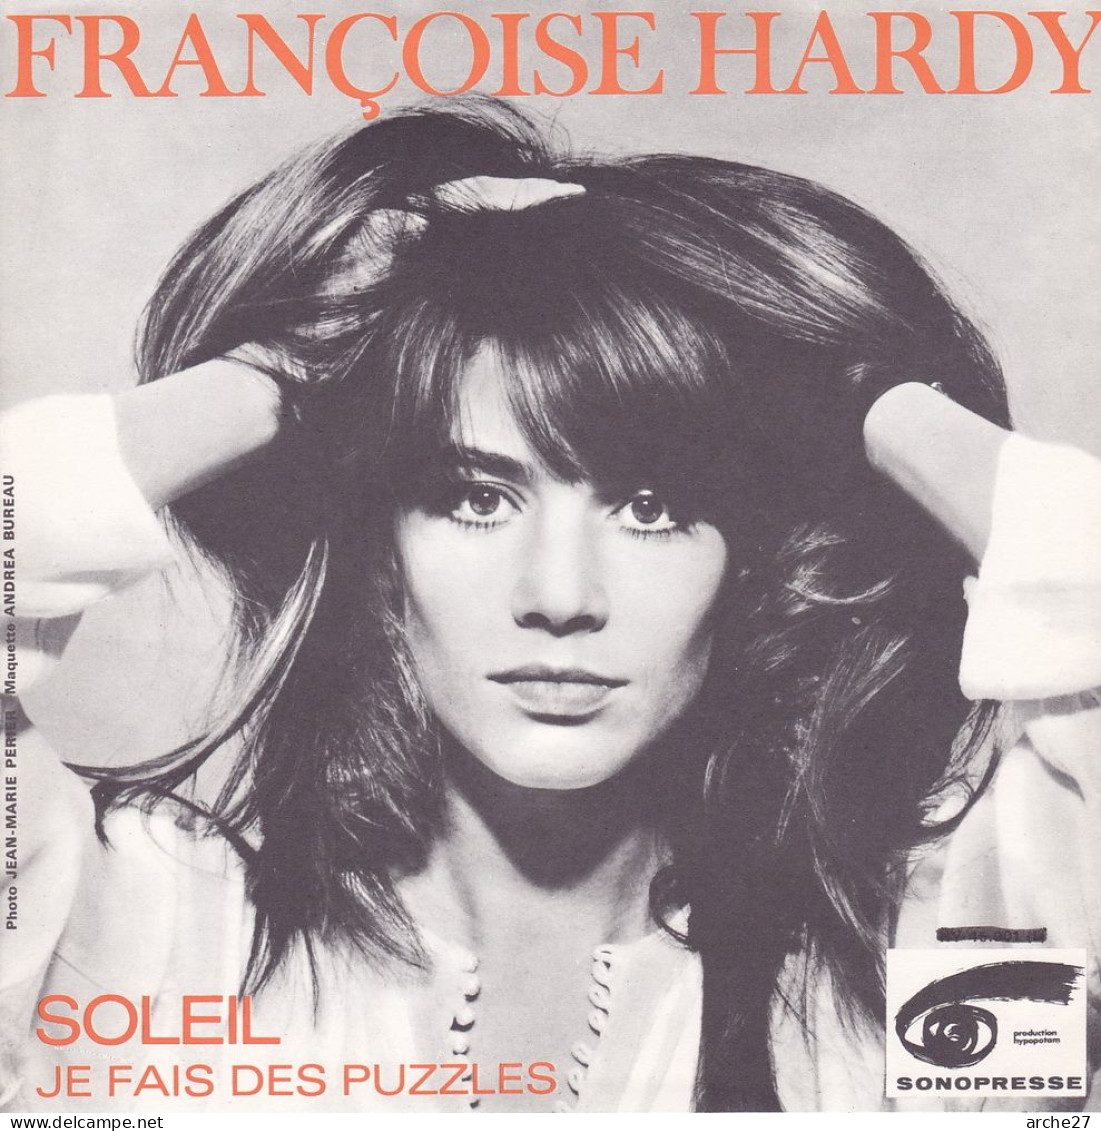 POCHETTE (encart) SP 45 TOURS Françoise HARDY - HY 45901 L (sans Disque) - Accessori & Bustine